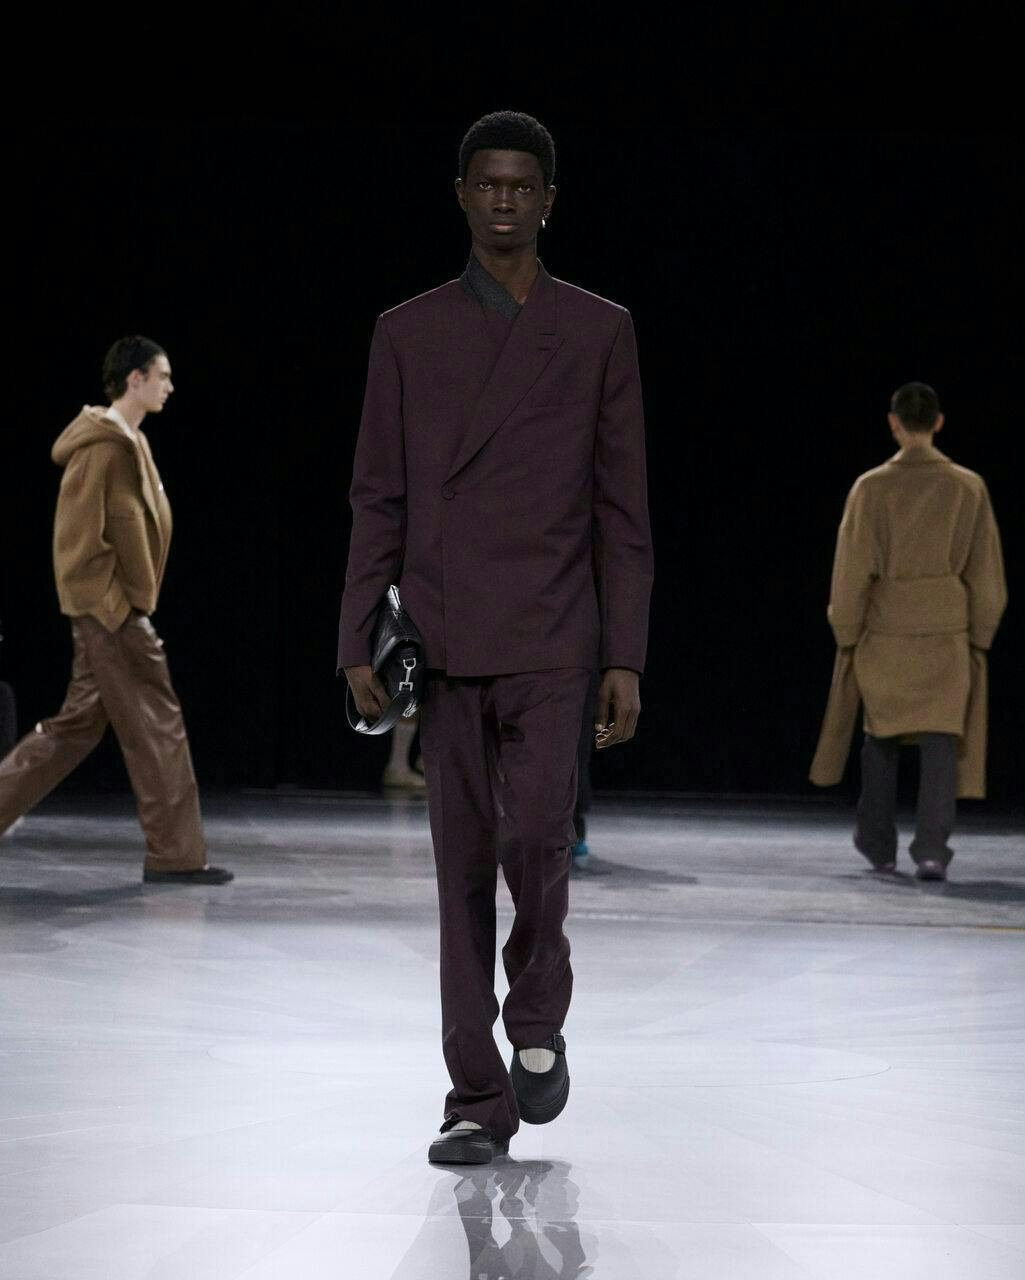 coat fashion adult male man person long sleeve jacket shoe handbag